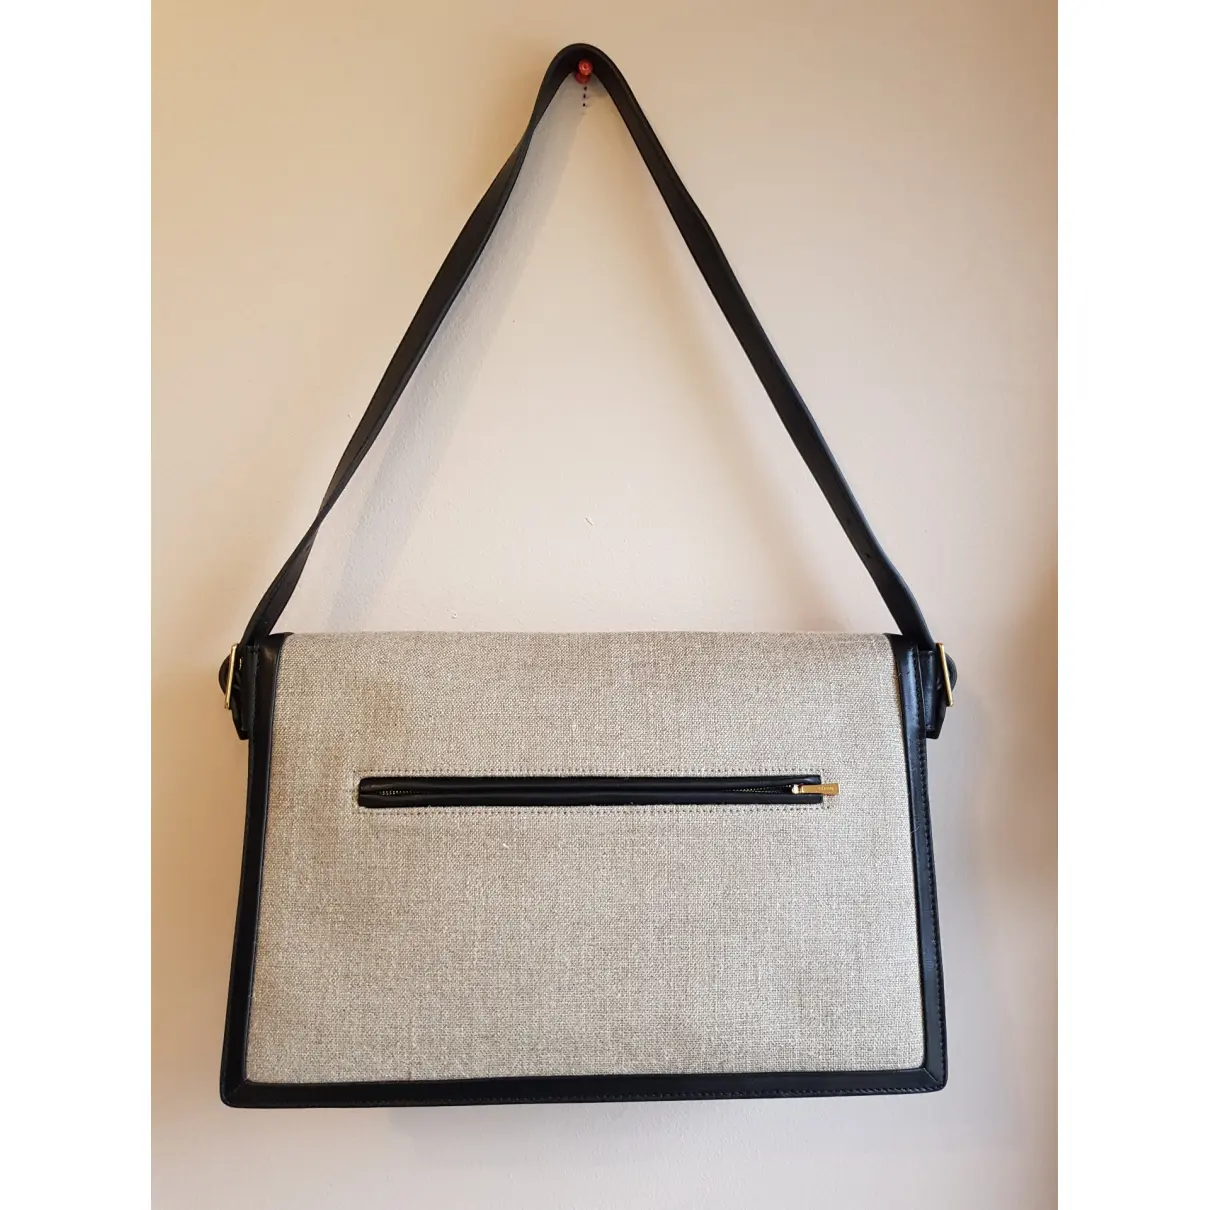 Buy Celine Diamond Clutch linen handbag online